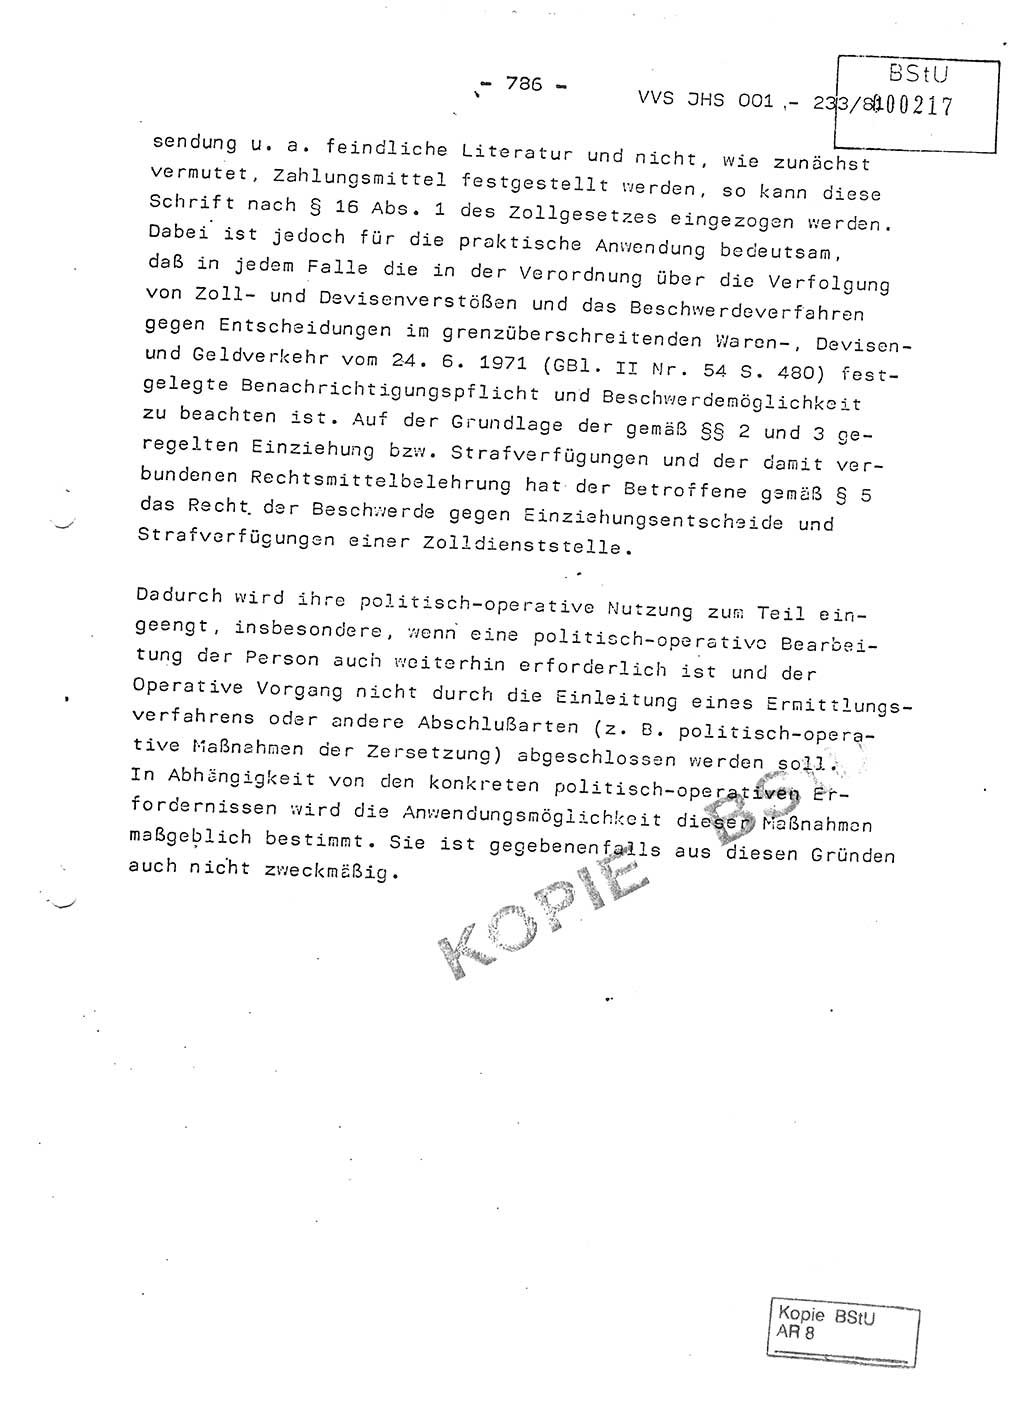 Dissertation Oberstleutnant Horst Zank (JHS), Oberstleutnant Dr. Karl-Heinz Knoblauch (JHS), Oberstleutnant Gustav-Adolf Kowalewski (HA Ⅸ), Oberstleutnant Wolfgang Plötner (HA Ⅸ), Ministerium für Staatssicherheit (MfS) [Deutsche Demokratische Republik (DDR)], Juristische Hochschule (JHS), Vertrauliche Verschlußsache (VVS) o001-233/81, Potsdam 1981, Blatt 786 (Diss. MfS DDR JHS VVS o001-233/81 1981, Bl. 786)